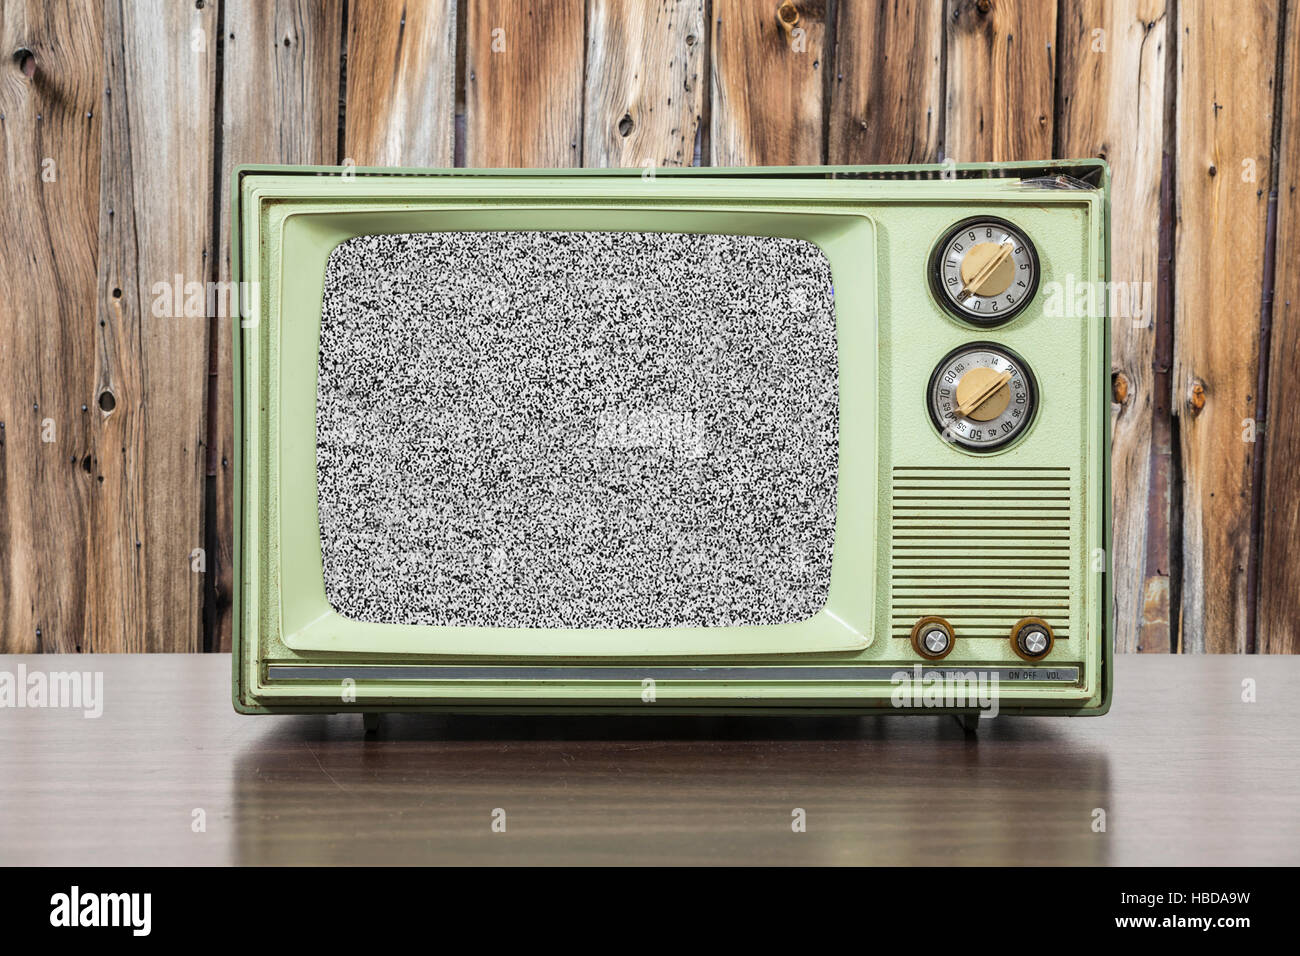 Grungy green vintage téléviseur avec écran statique et mur en bois. Banque D'Images